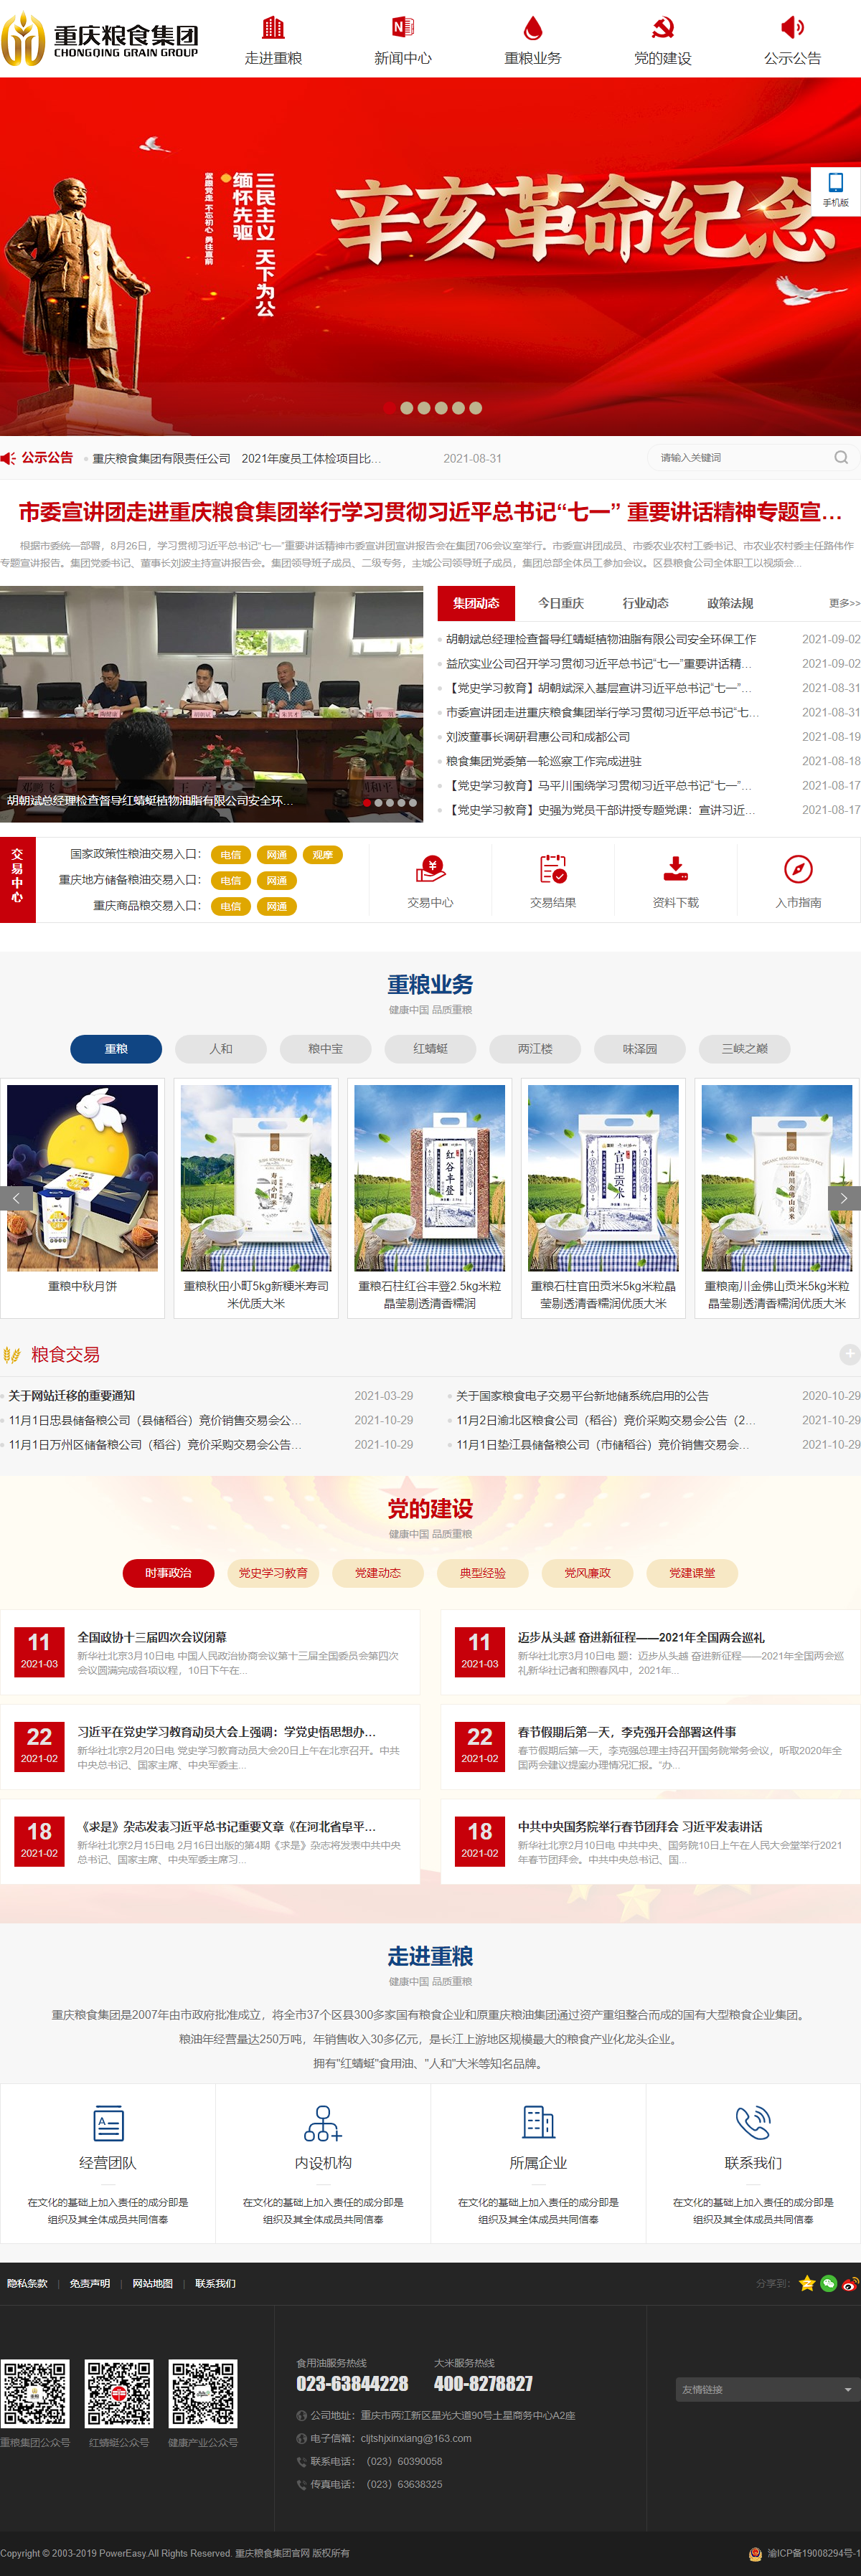 重庆粮食集团有限责任公司网站案例